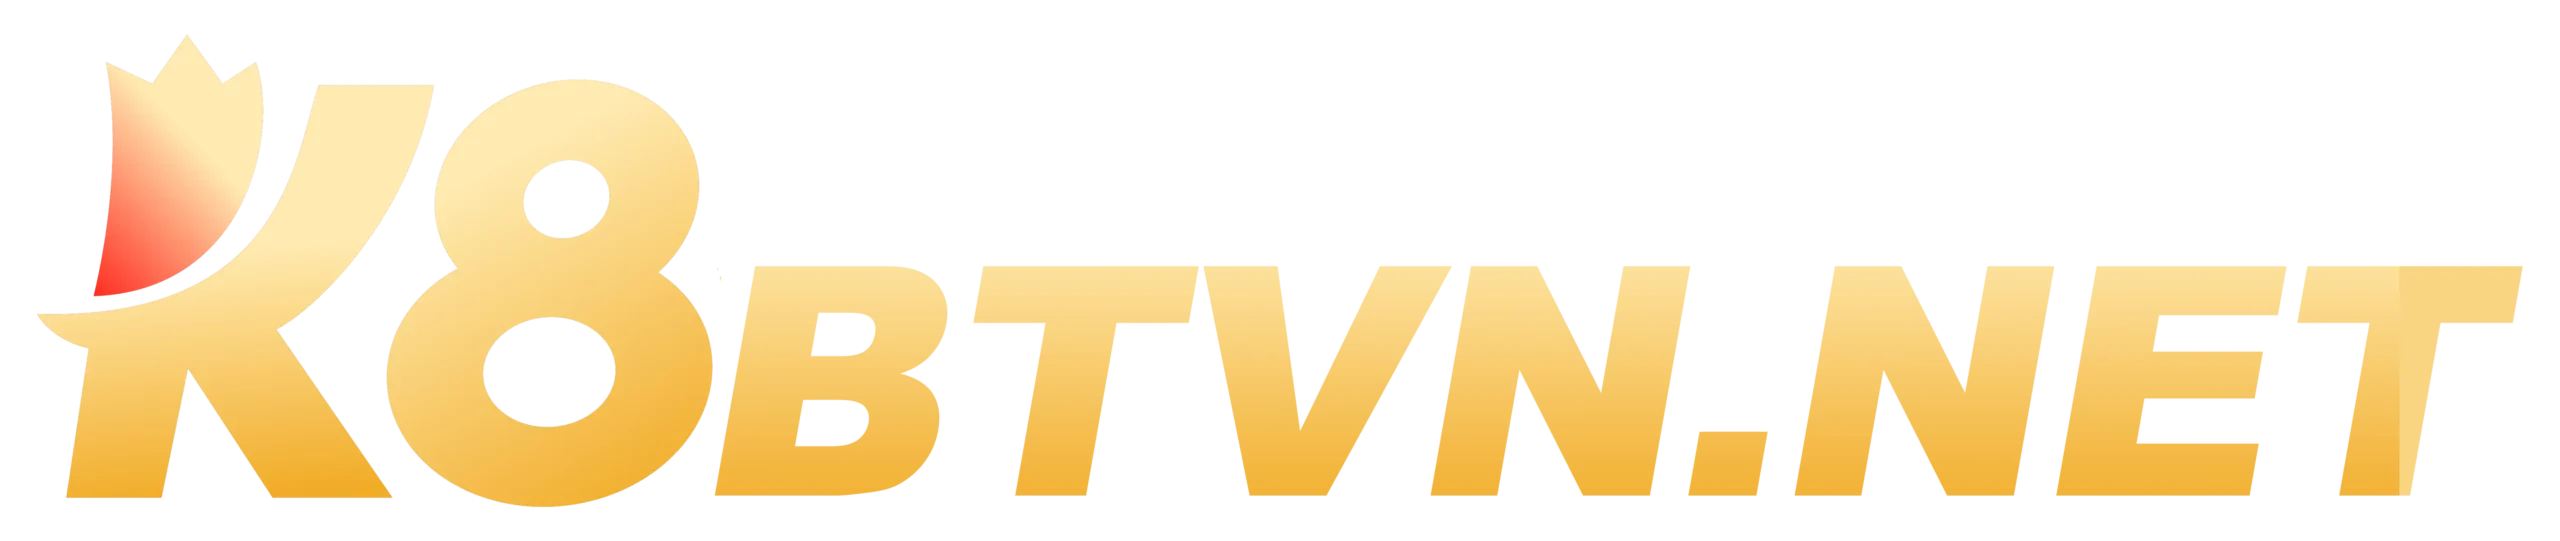 Logo k8btvn